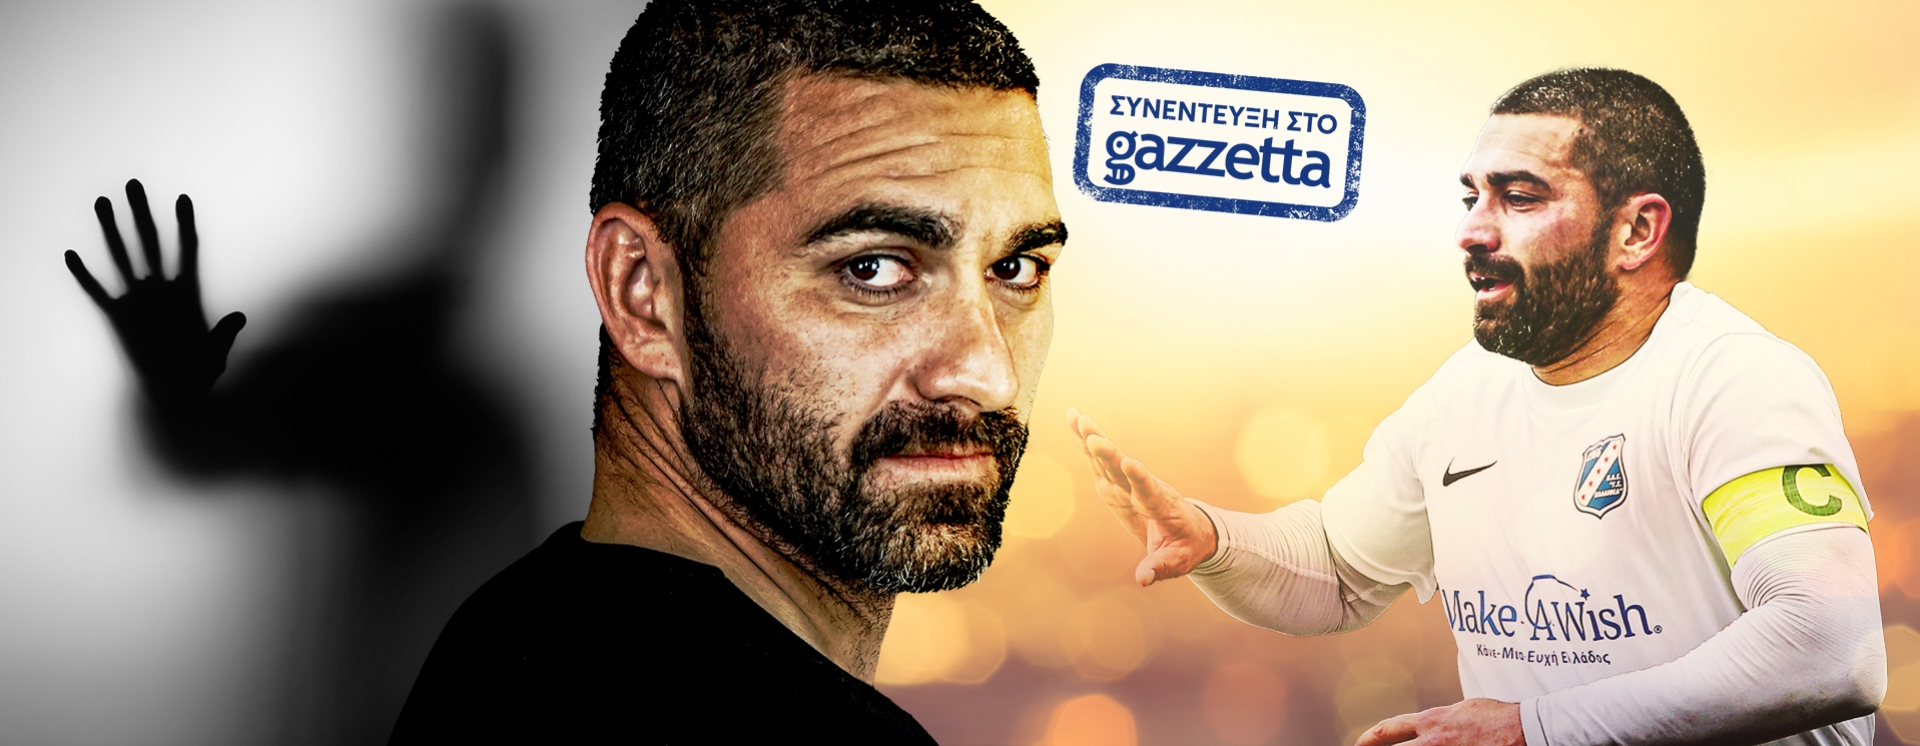 Μαρουκάκης στο Gazzetta: «Μου κόλλησαν ρετσινιά, αλλά ο "χοντρός" είναι ακόμη εδώ»